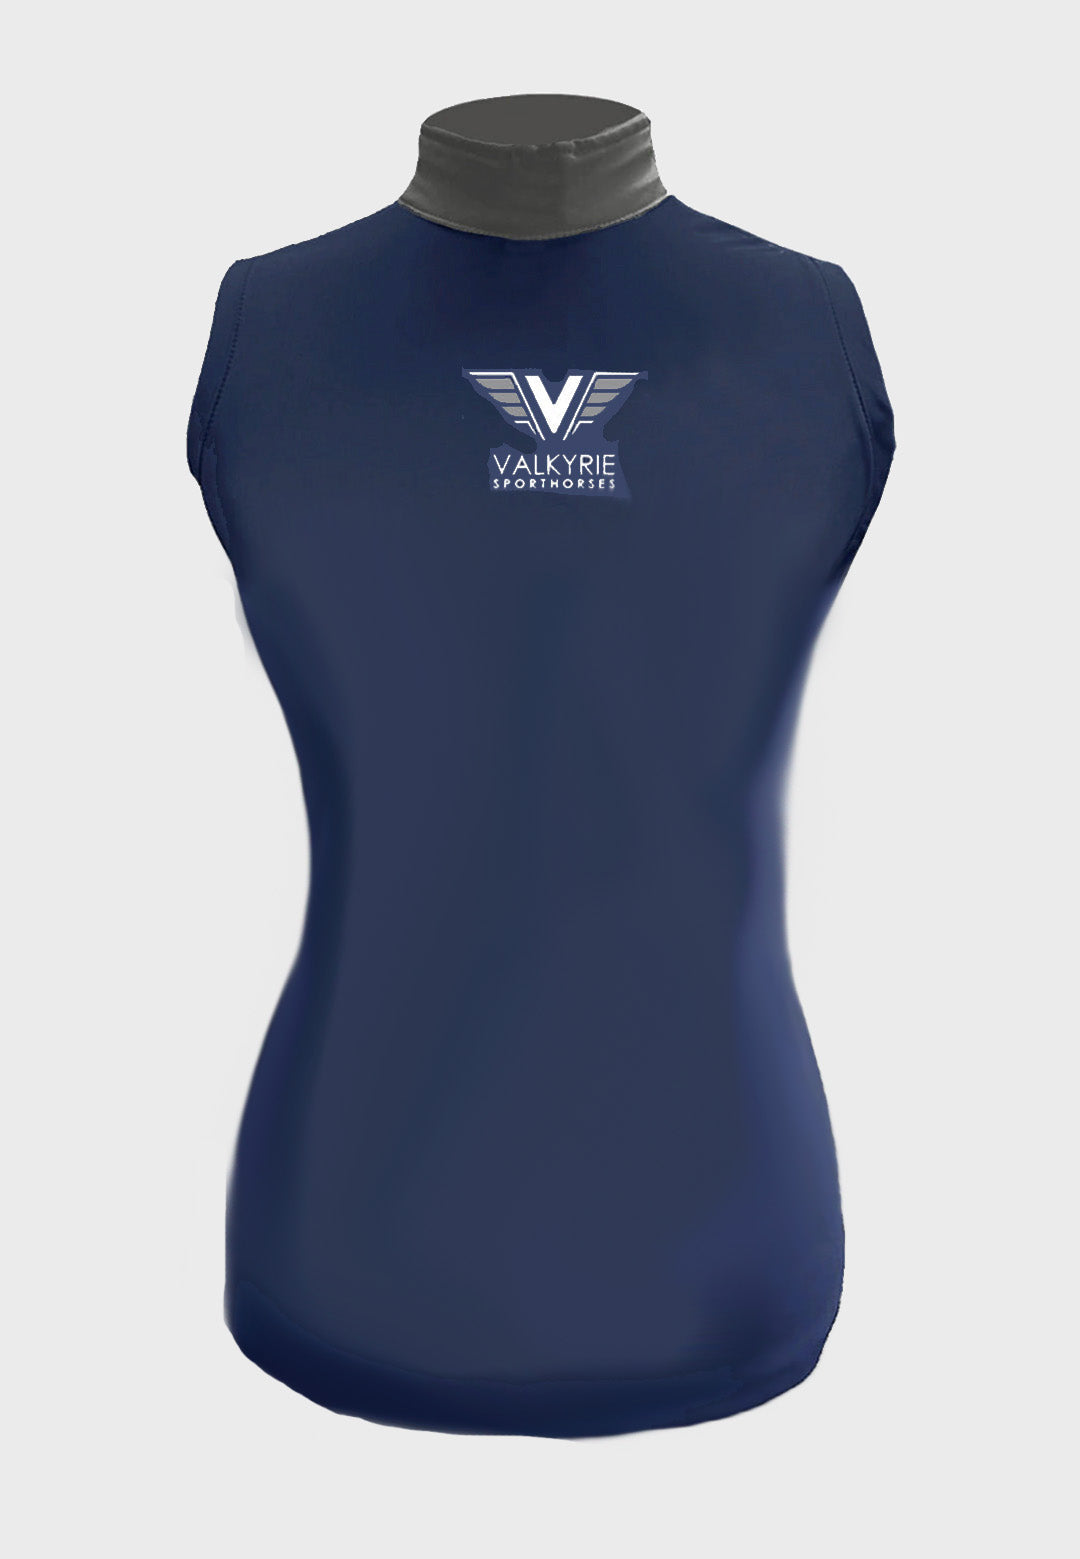 Valkyrie Sporthorses Navy + dark Grey Custom Sleeveless Sunshirt     Ladies + youth Sizes